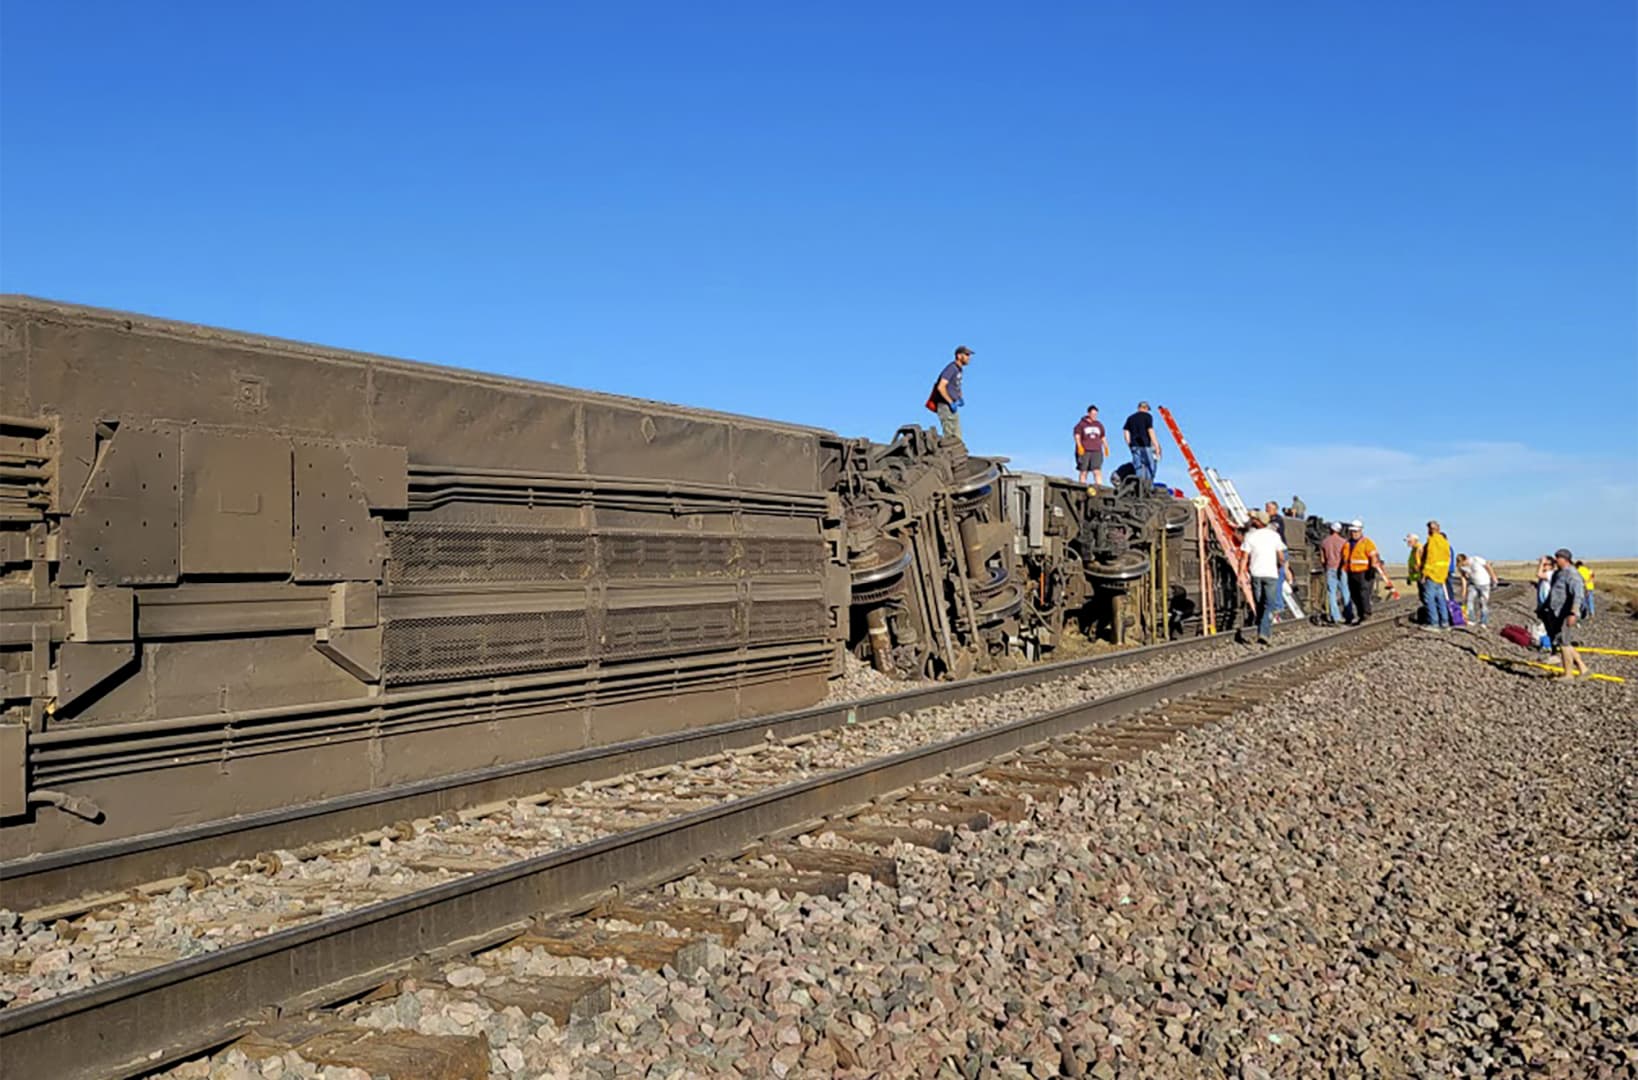 Kisiklott egy vonat az Egyesült Államokban, többen meghaltak